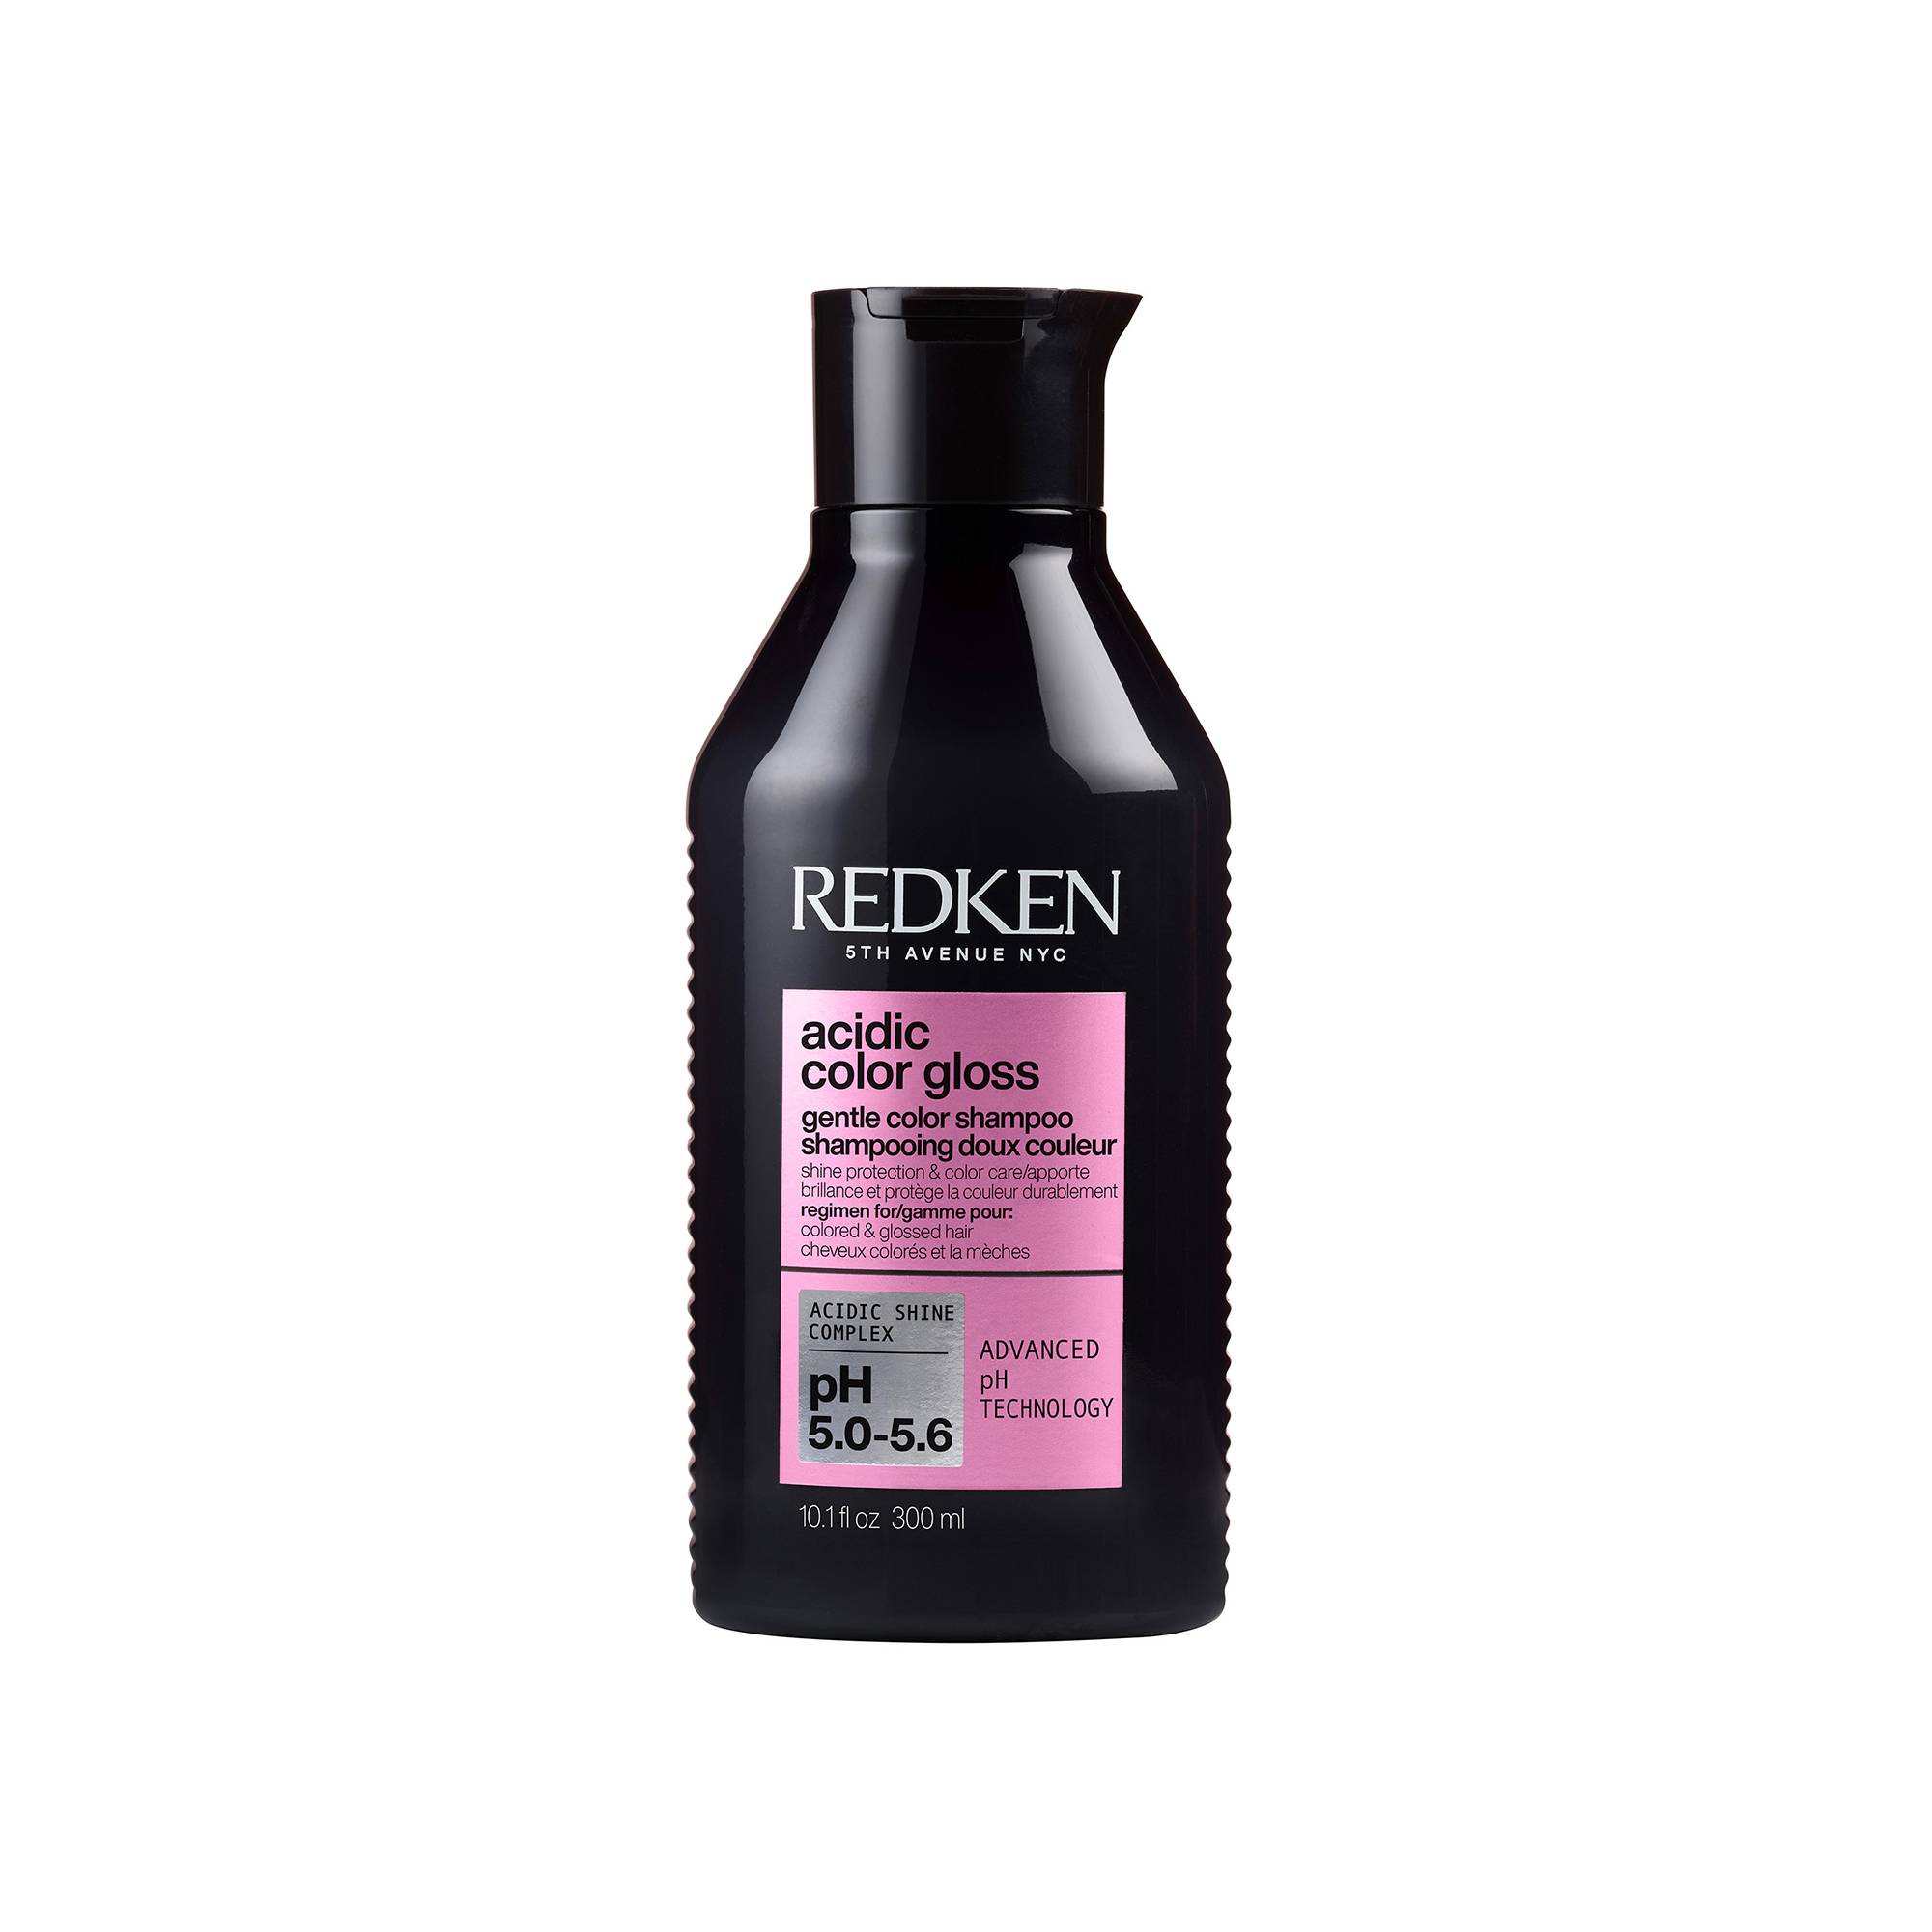 Shampoing doux couleur Acidic Color Gloss de la marque Redken Contenance 300ml - 1